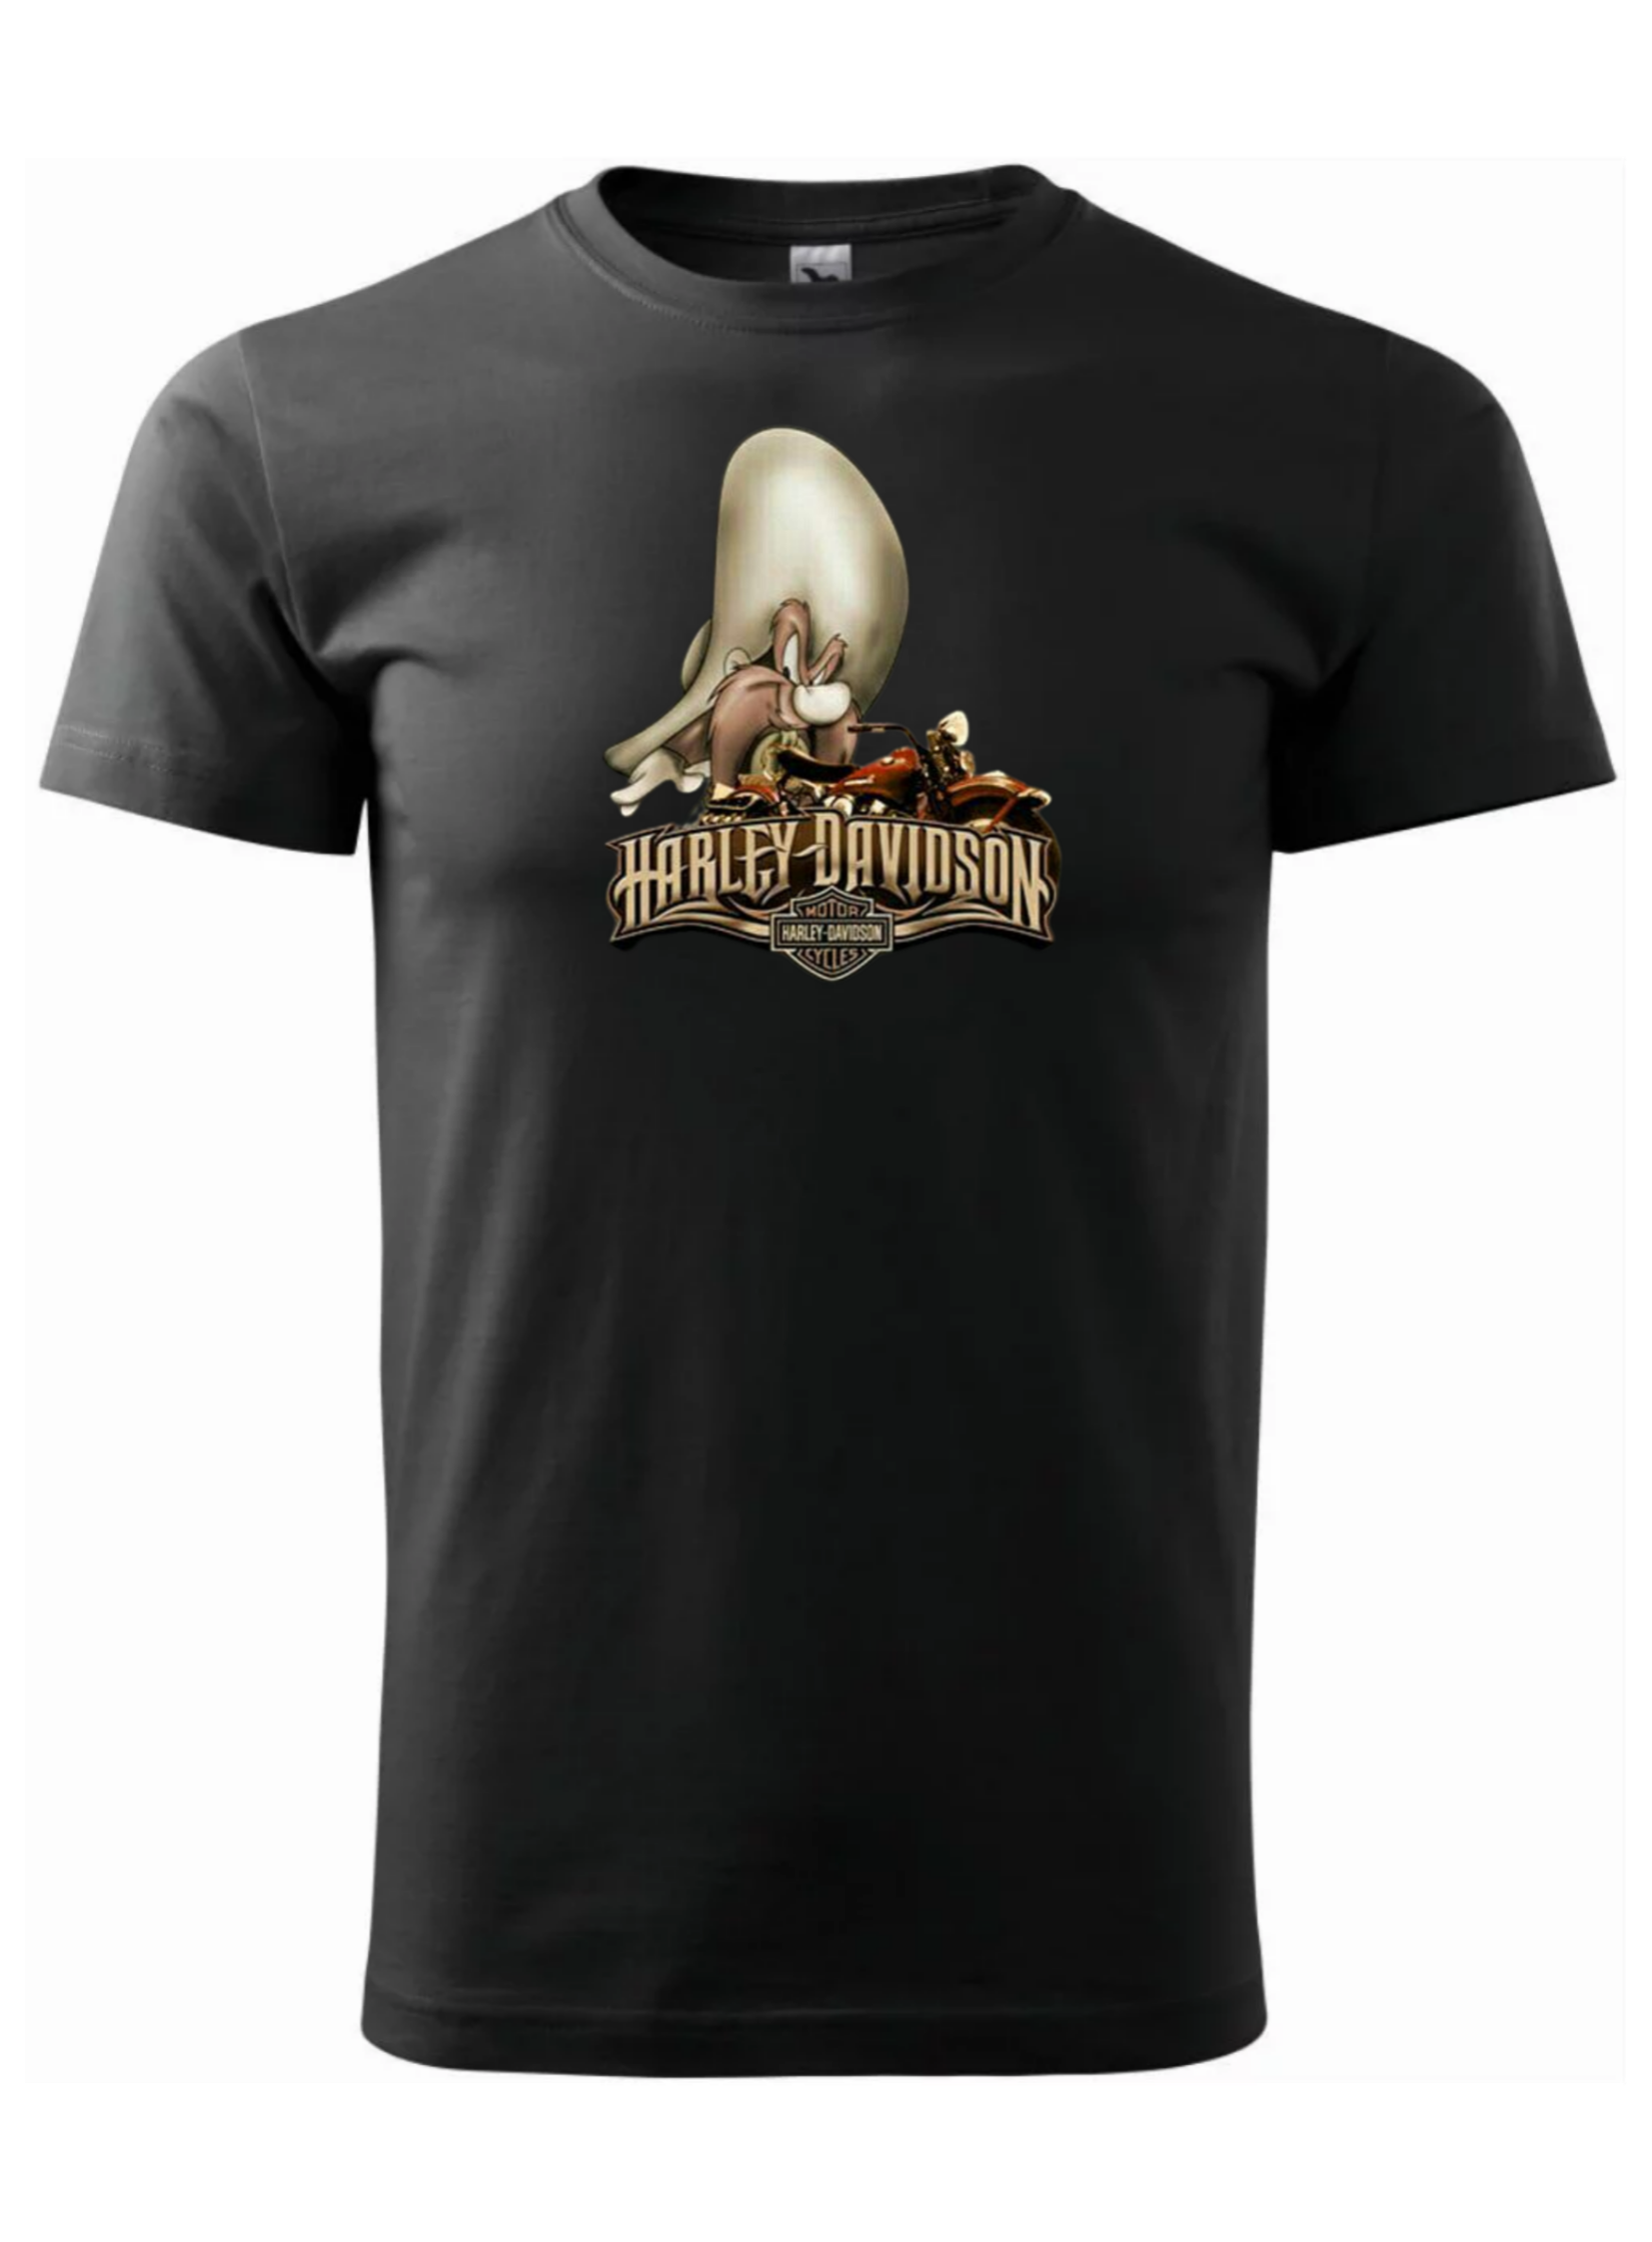 Pánské tričko s potiskem značky Harley Davidson 42